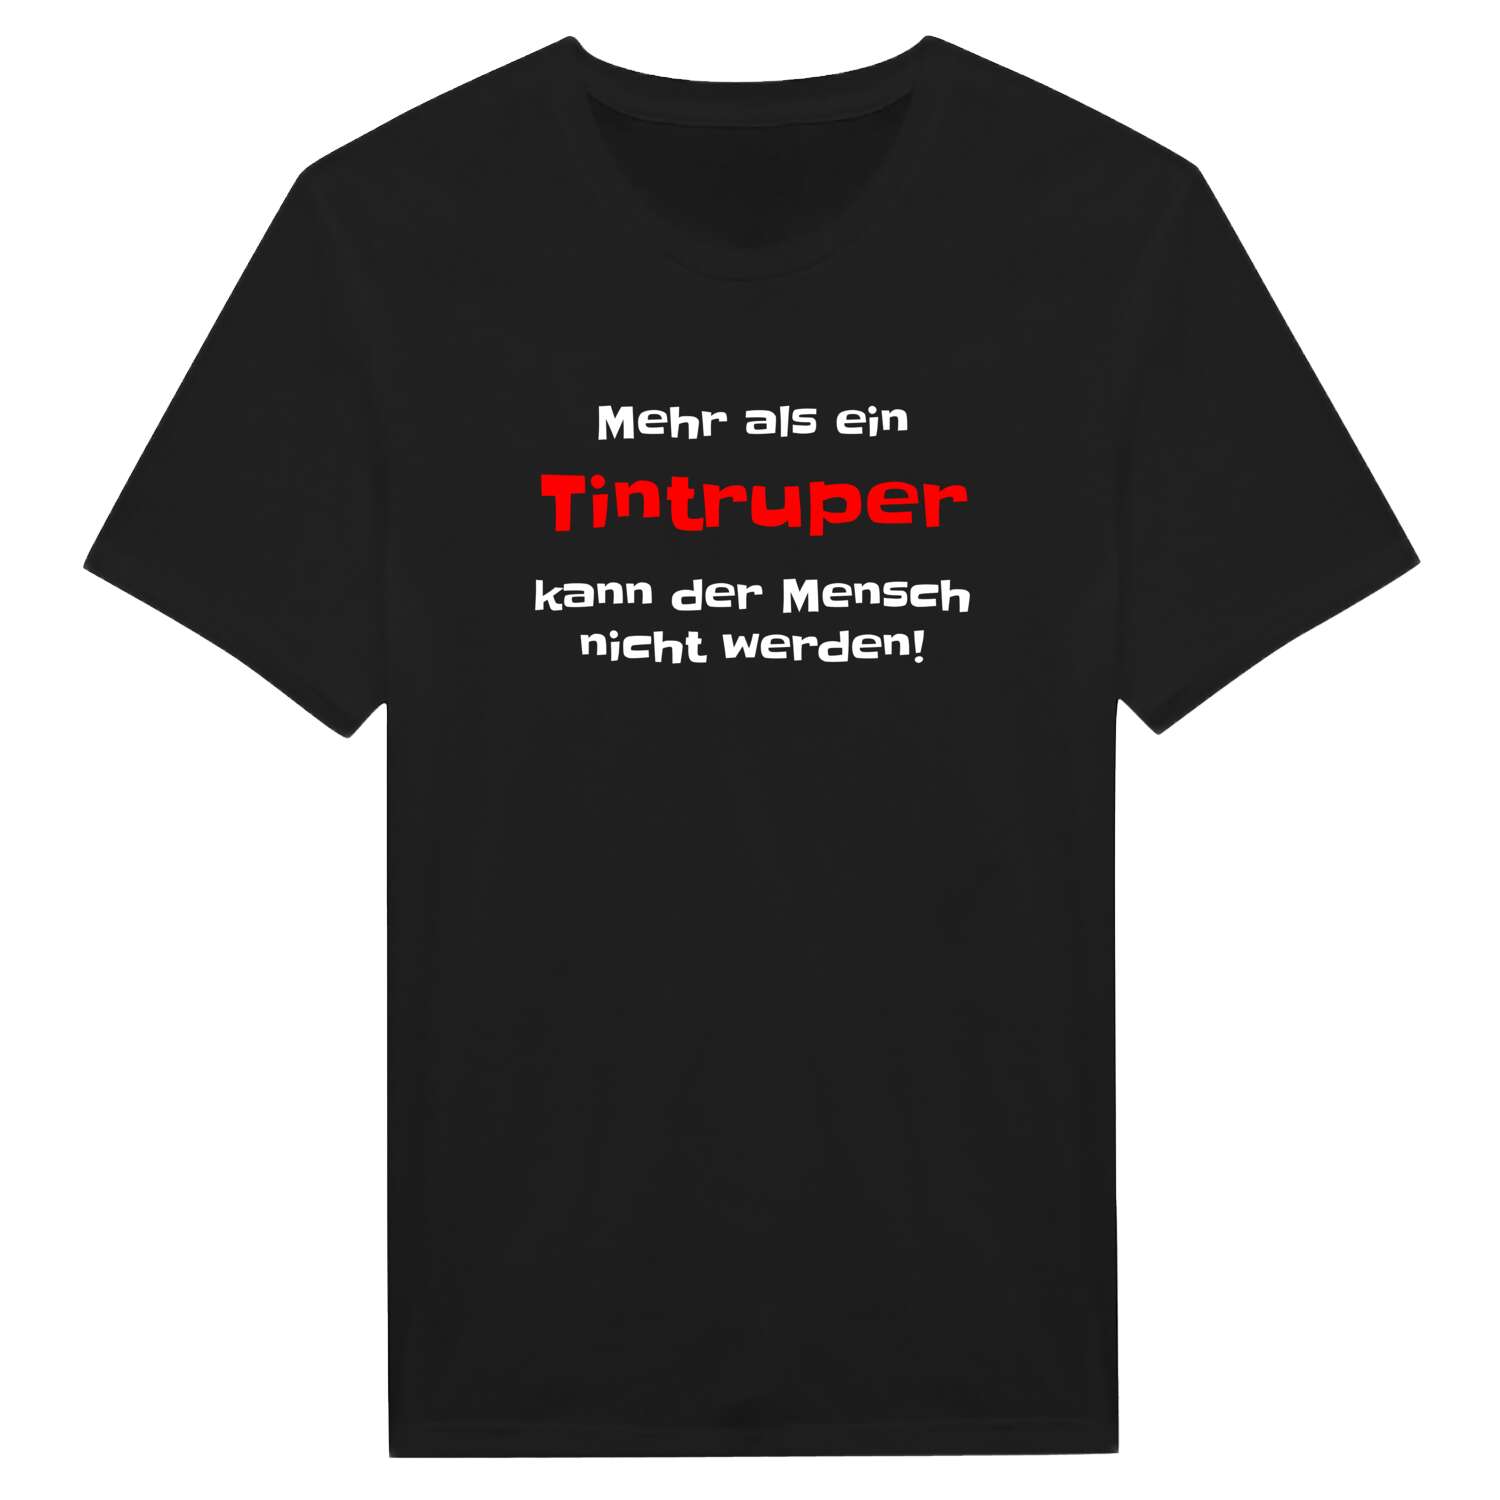 Tintrup T-Shirt »Mehr als ein«